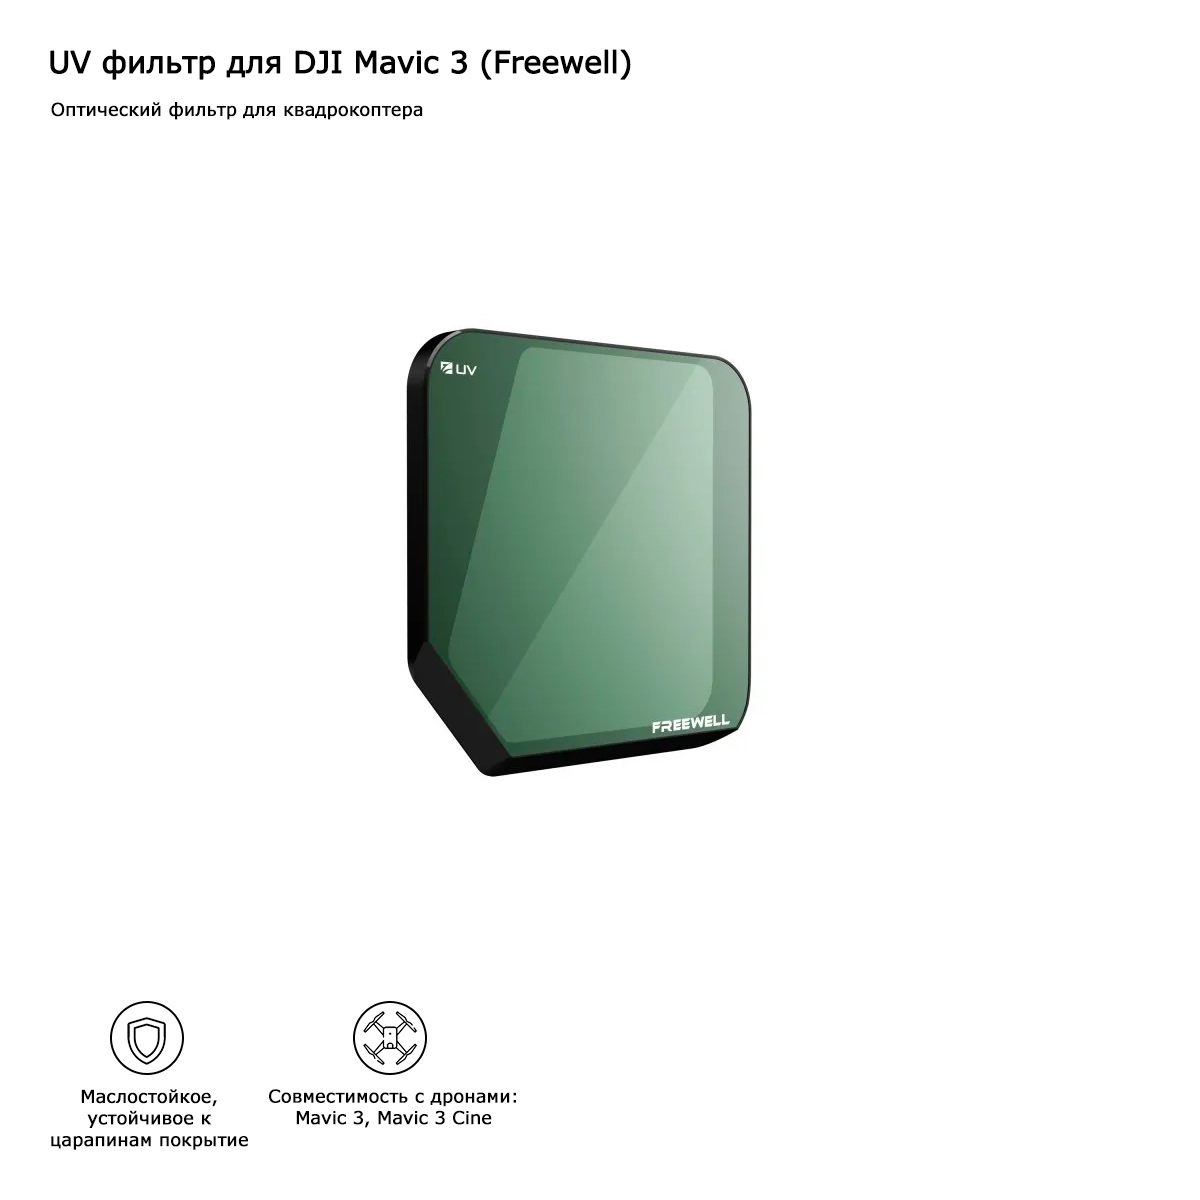 Фильтр UV для DJI Mavic 3 (Freewell) (FW-MC3-UV)